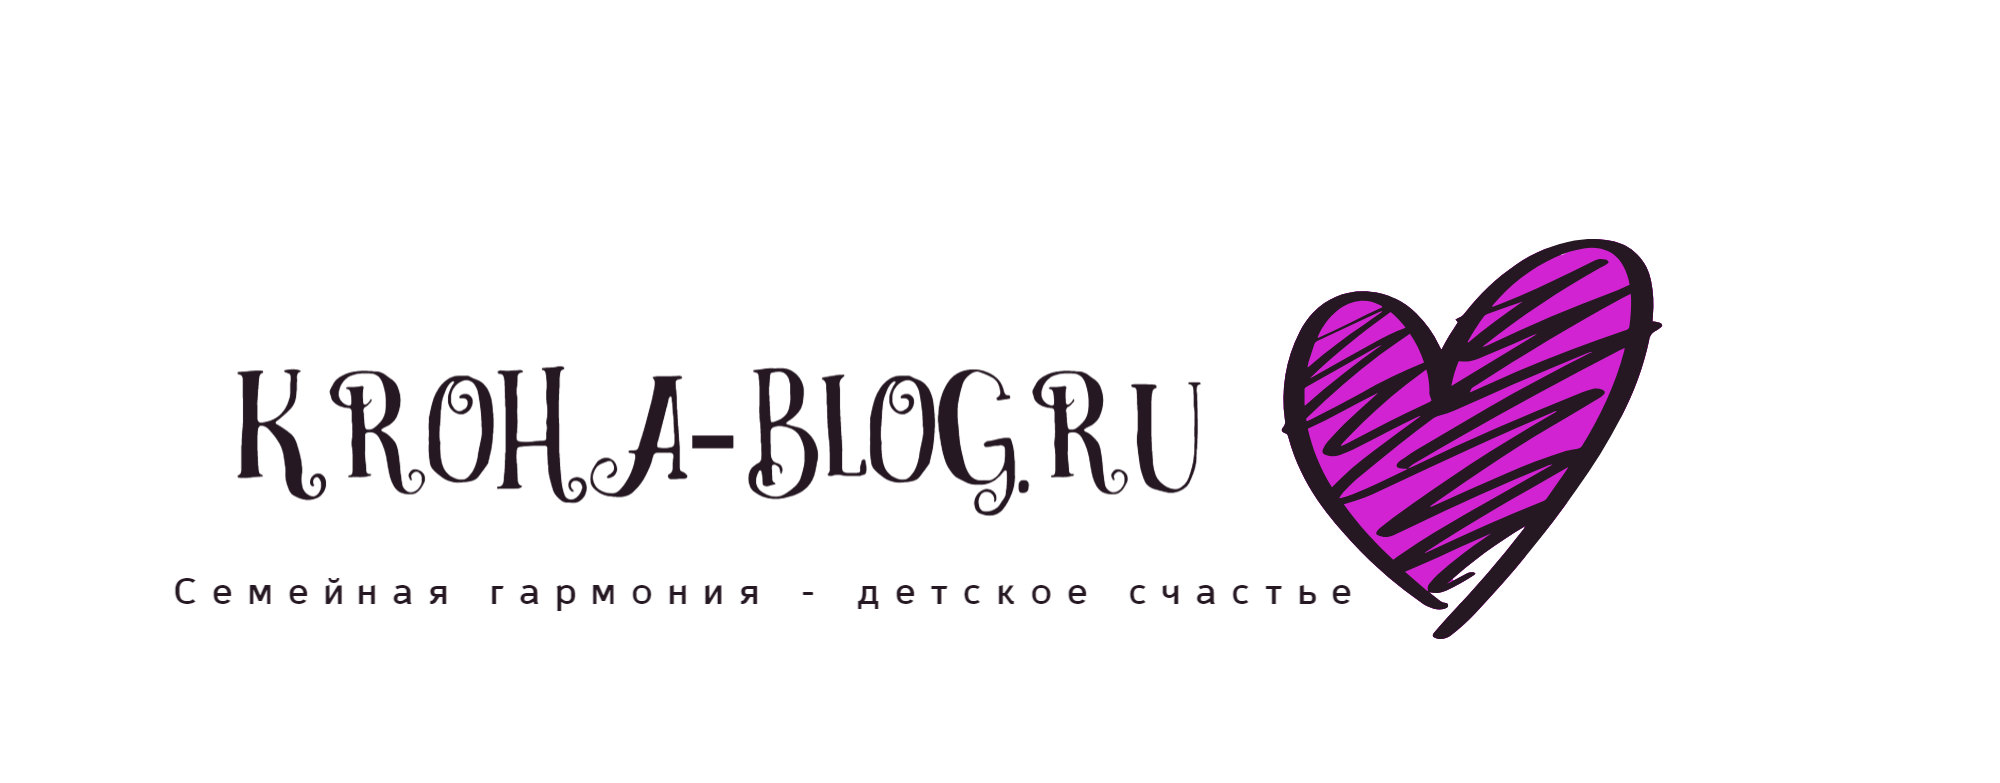 Kroha-blog.ru